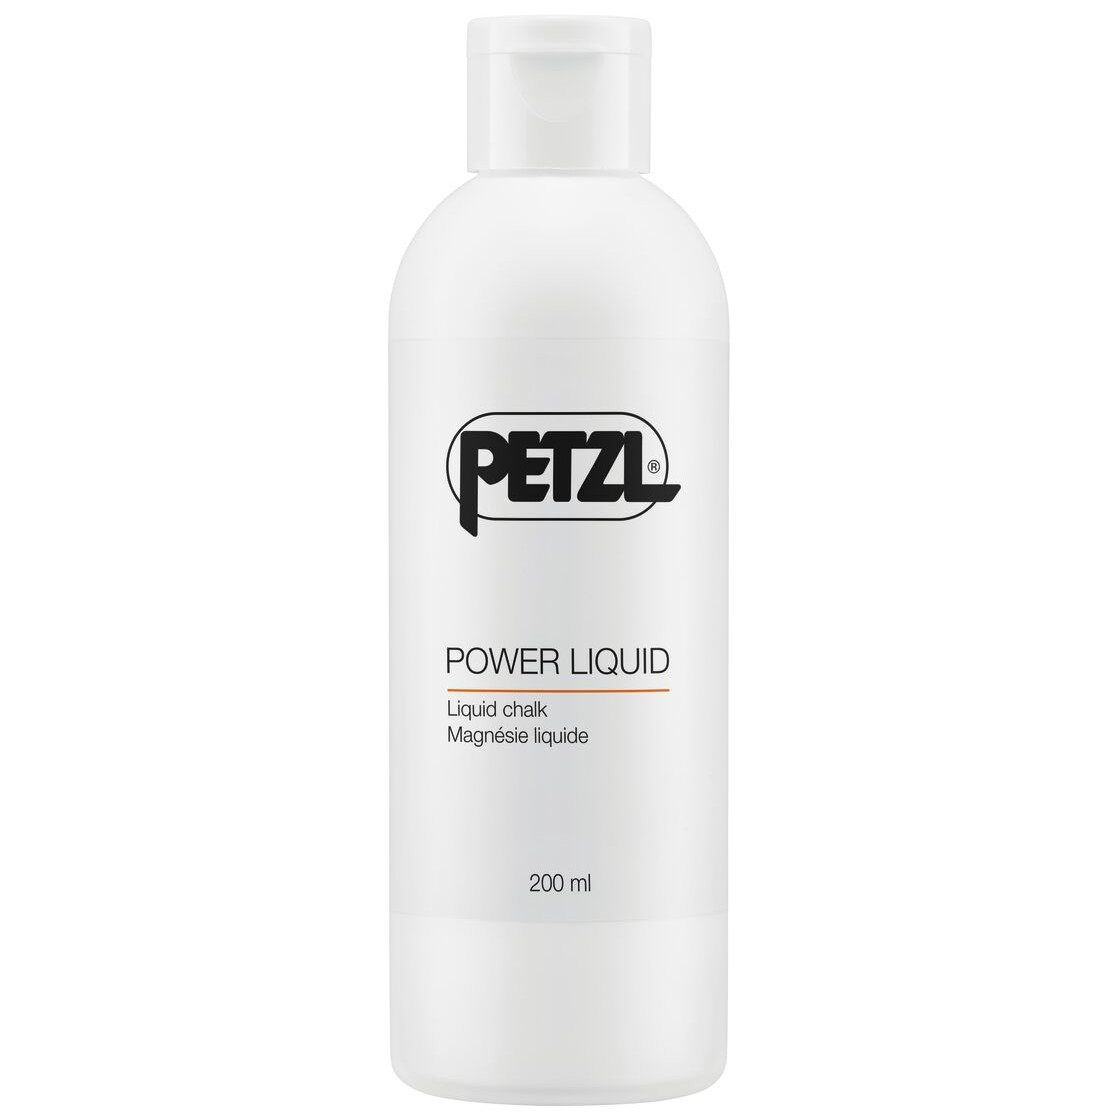 Foto de Petzl Power Liquid Chalk - 200ml